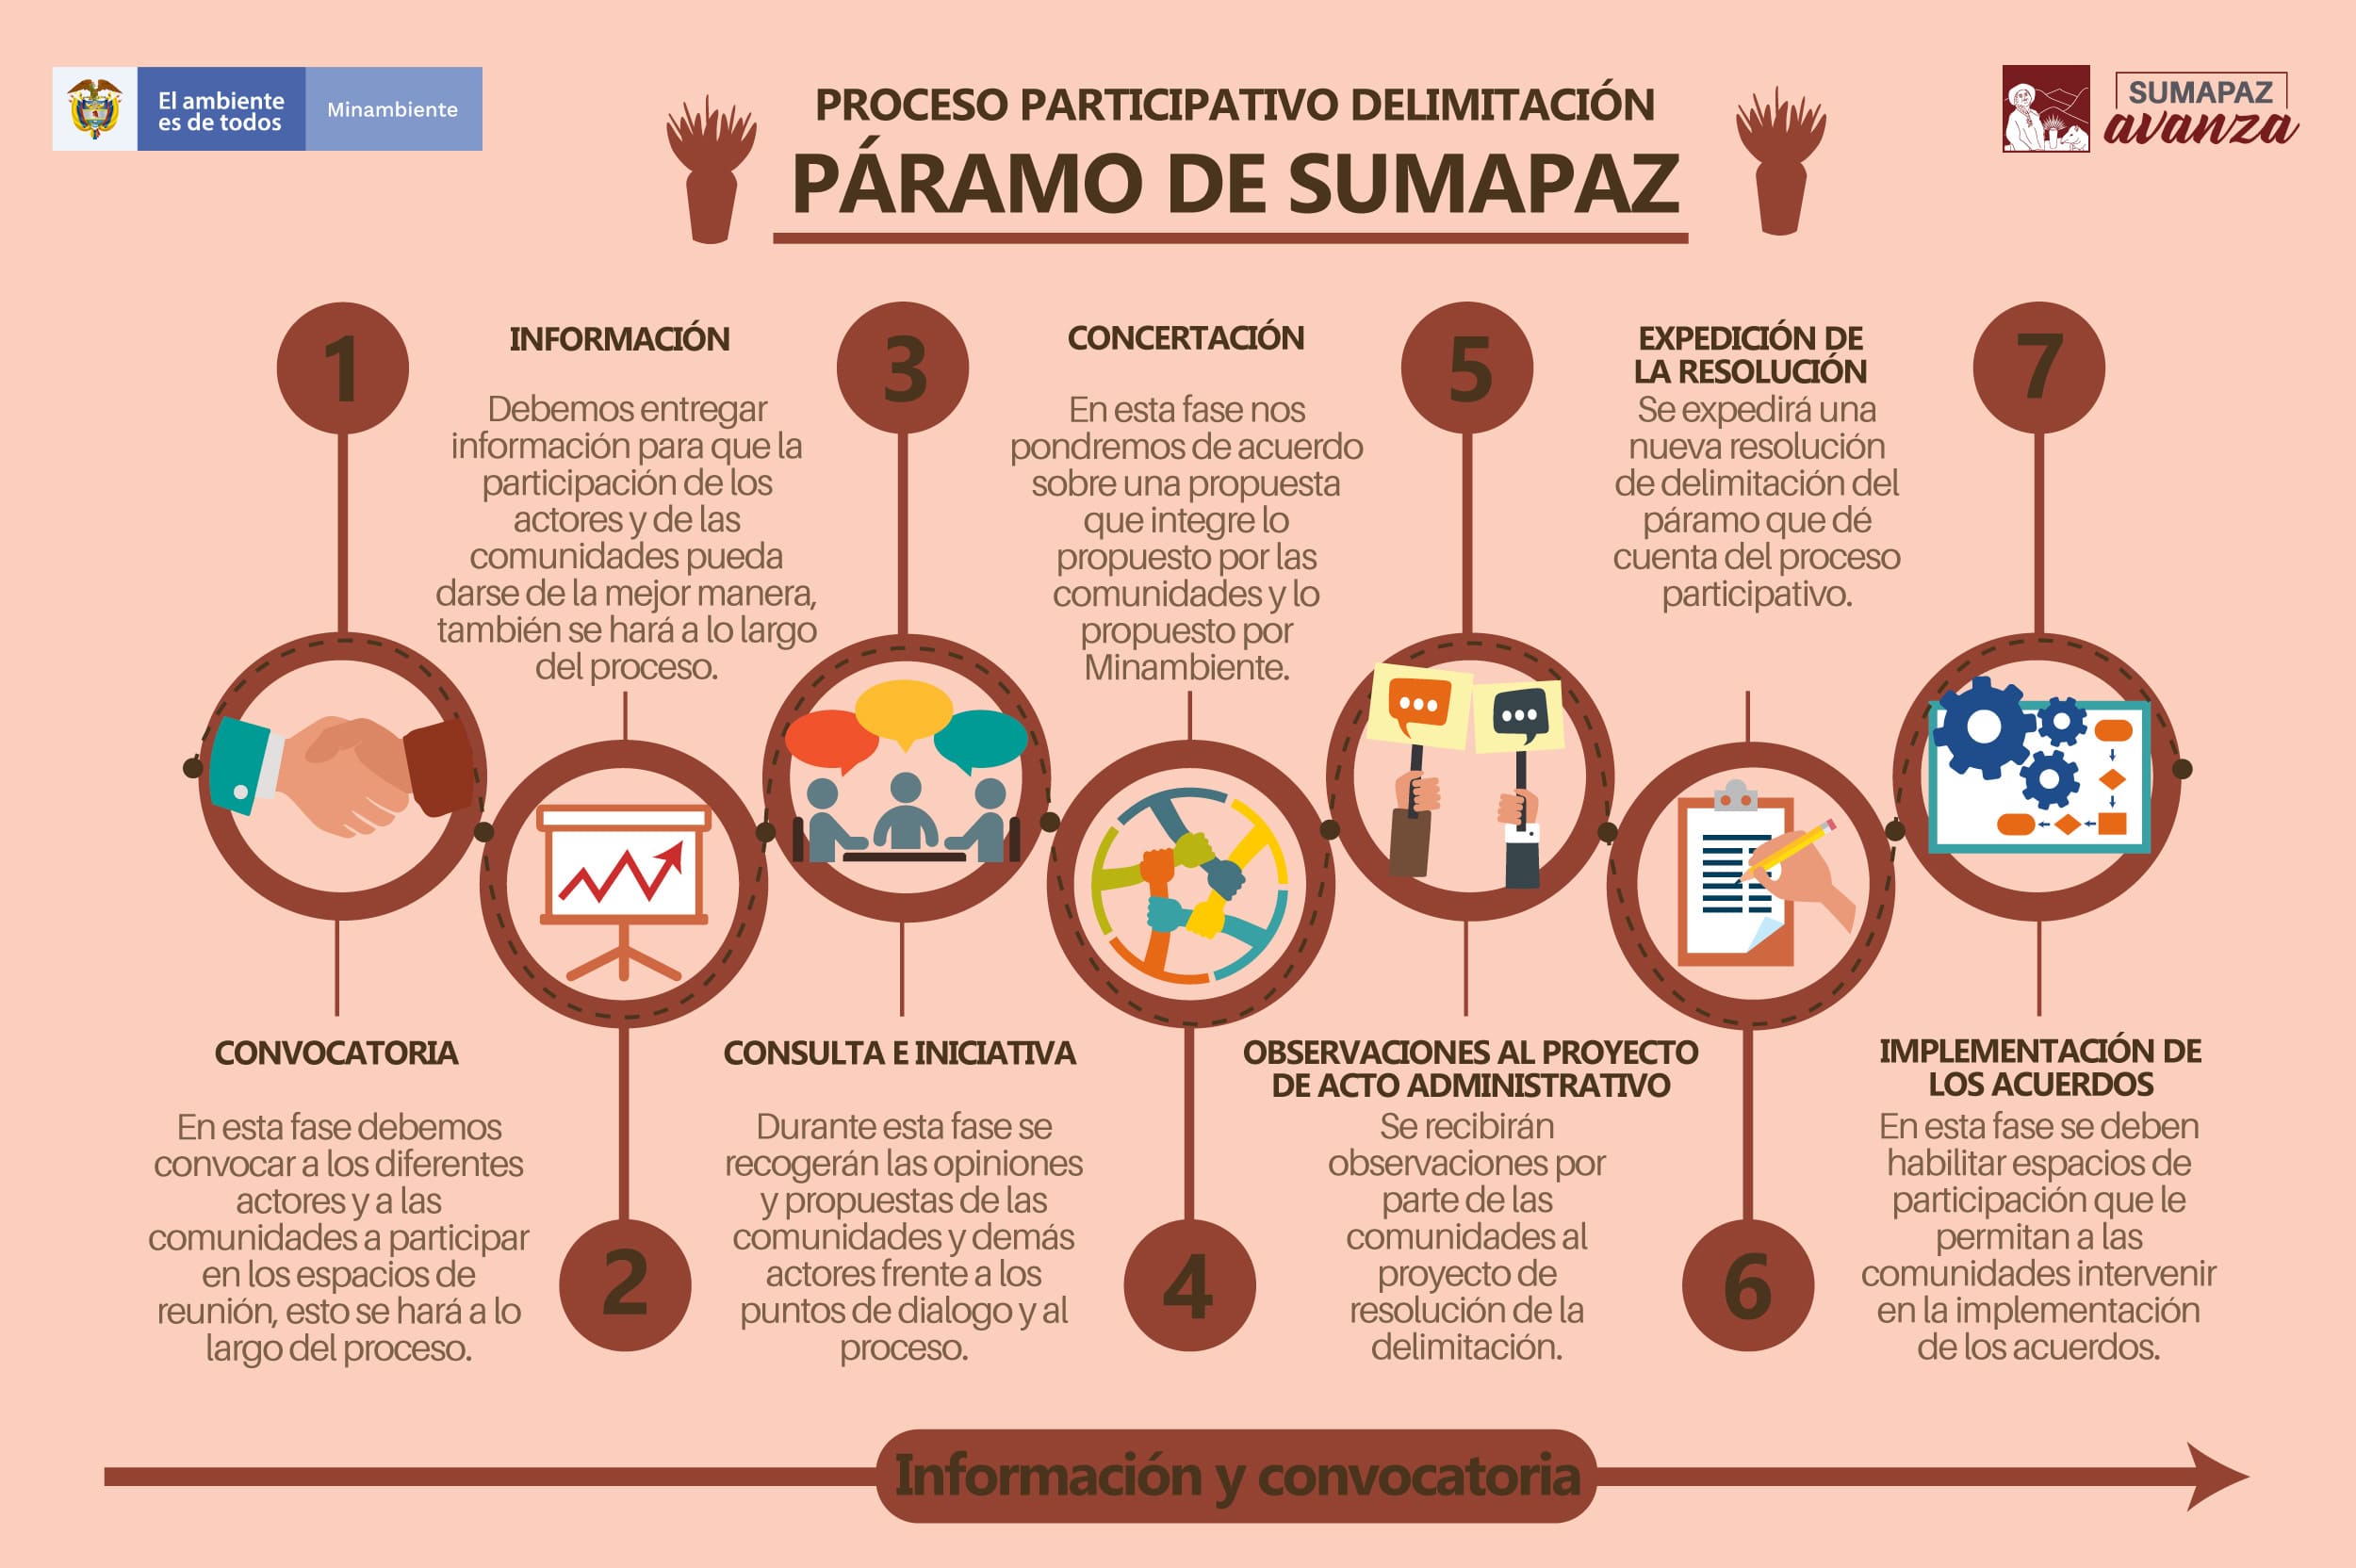 Diagrama del proceso participativo delimitación páramo de sumapaz